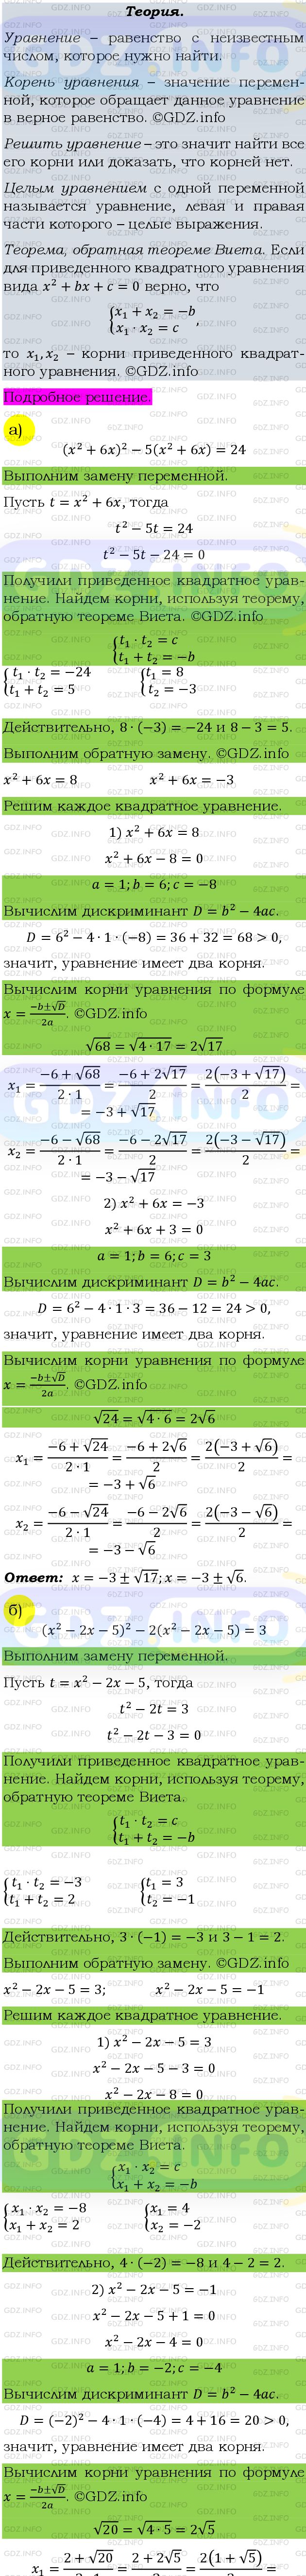 Фото подробного решения: Номер задания №321 из ГДЗ по Алгебре 9 класс: Макарычев Ю.Н.